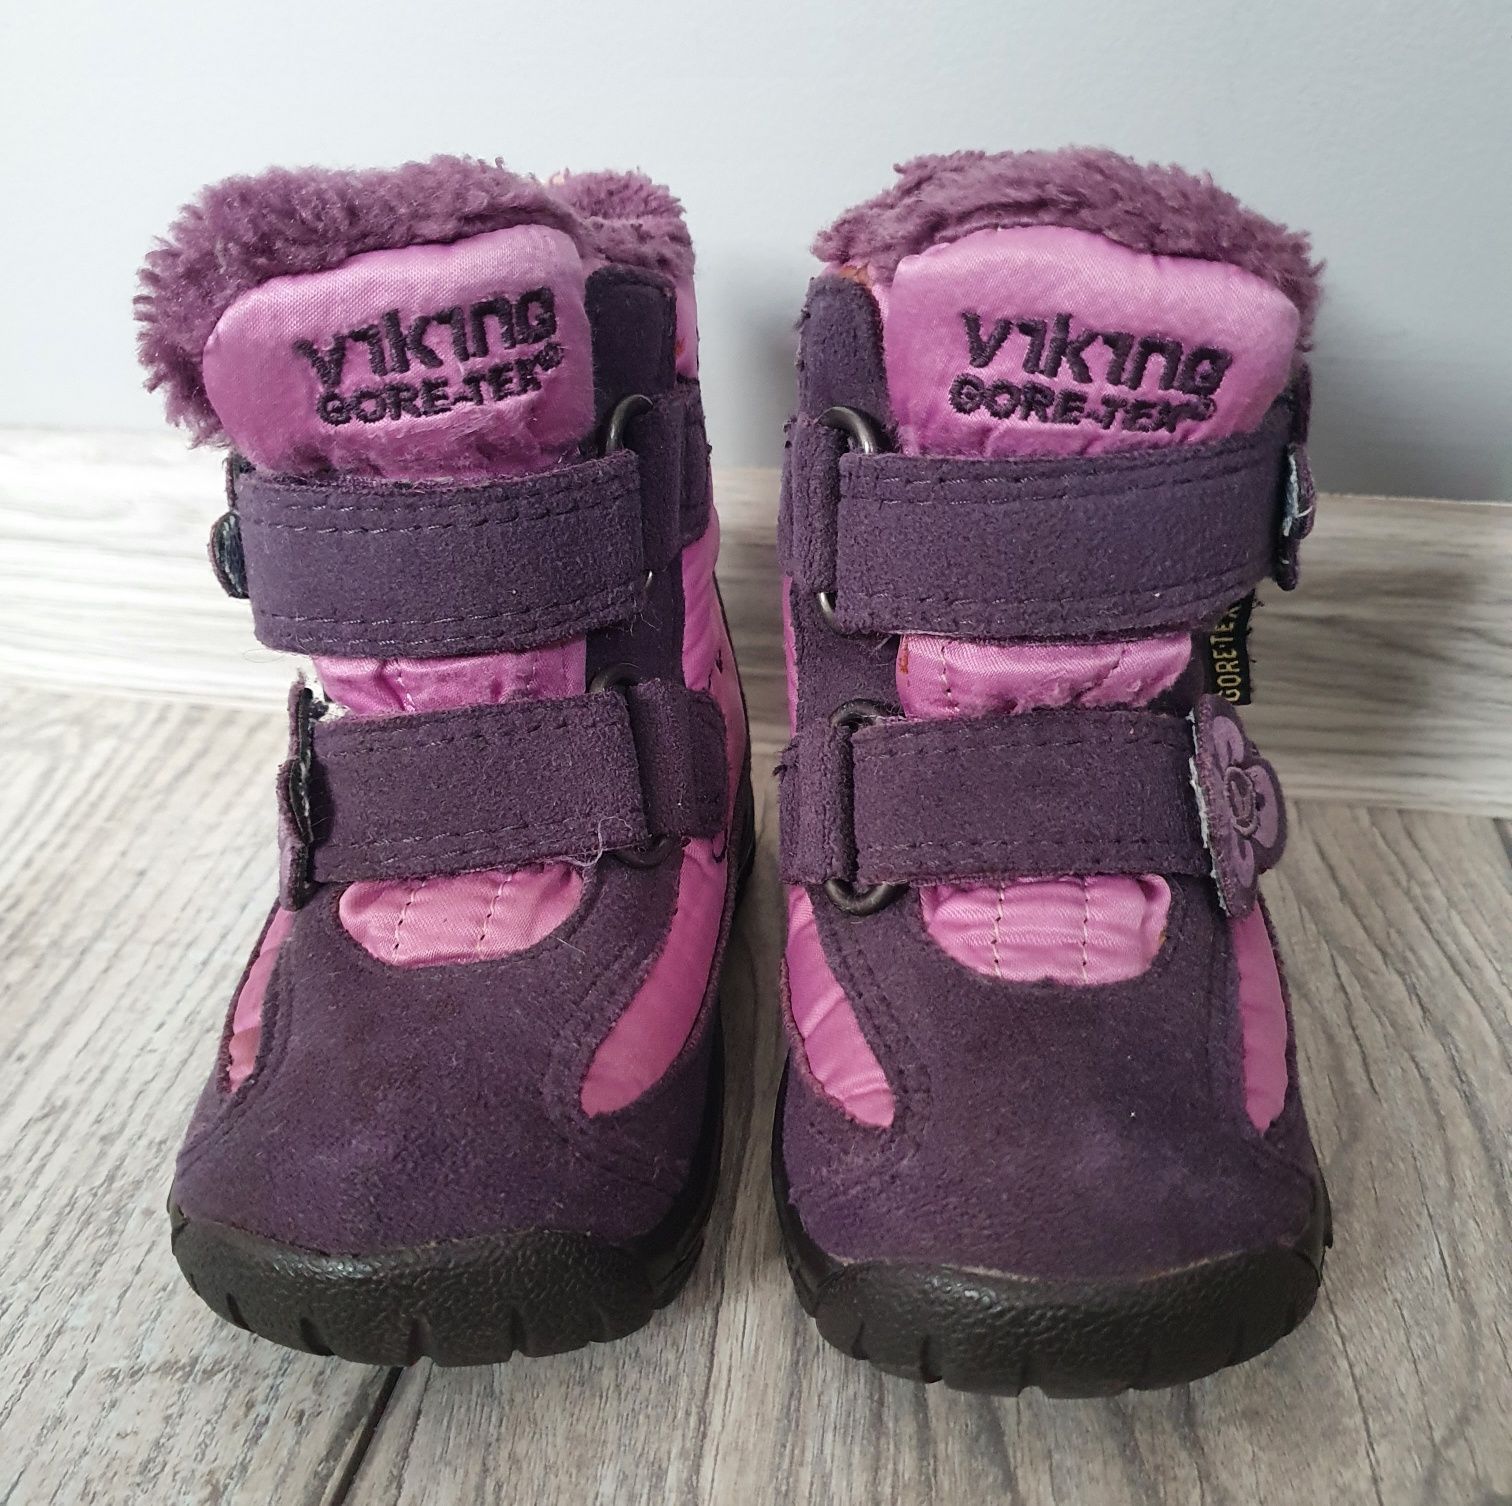 Buty zimowe / śniegowce / kozaki / botki Viking Gore-Tex 20 13.5cm